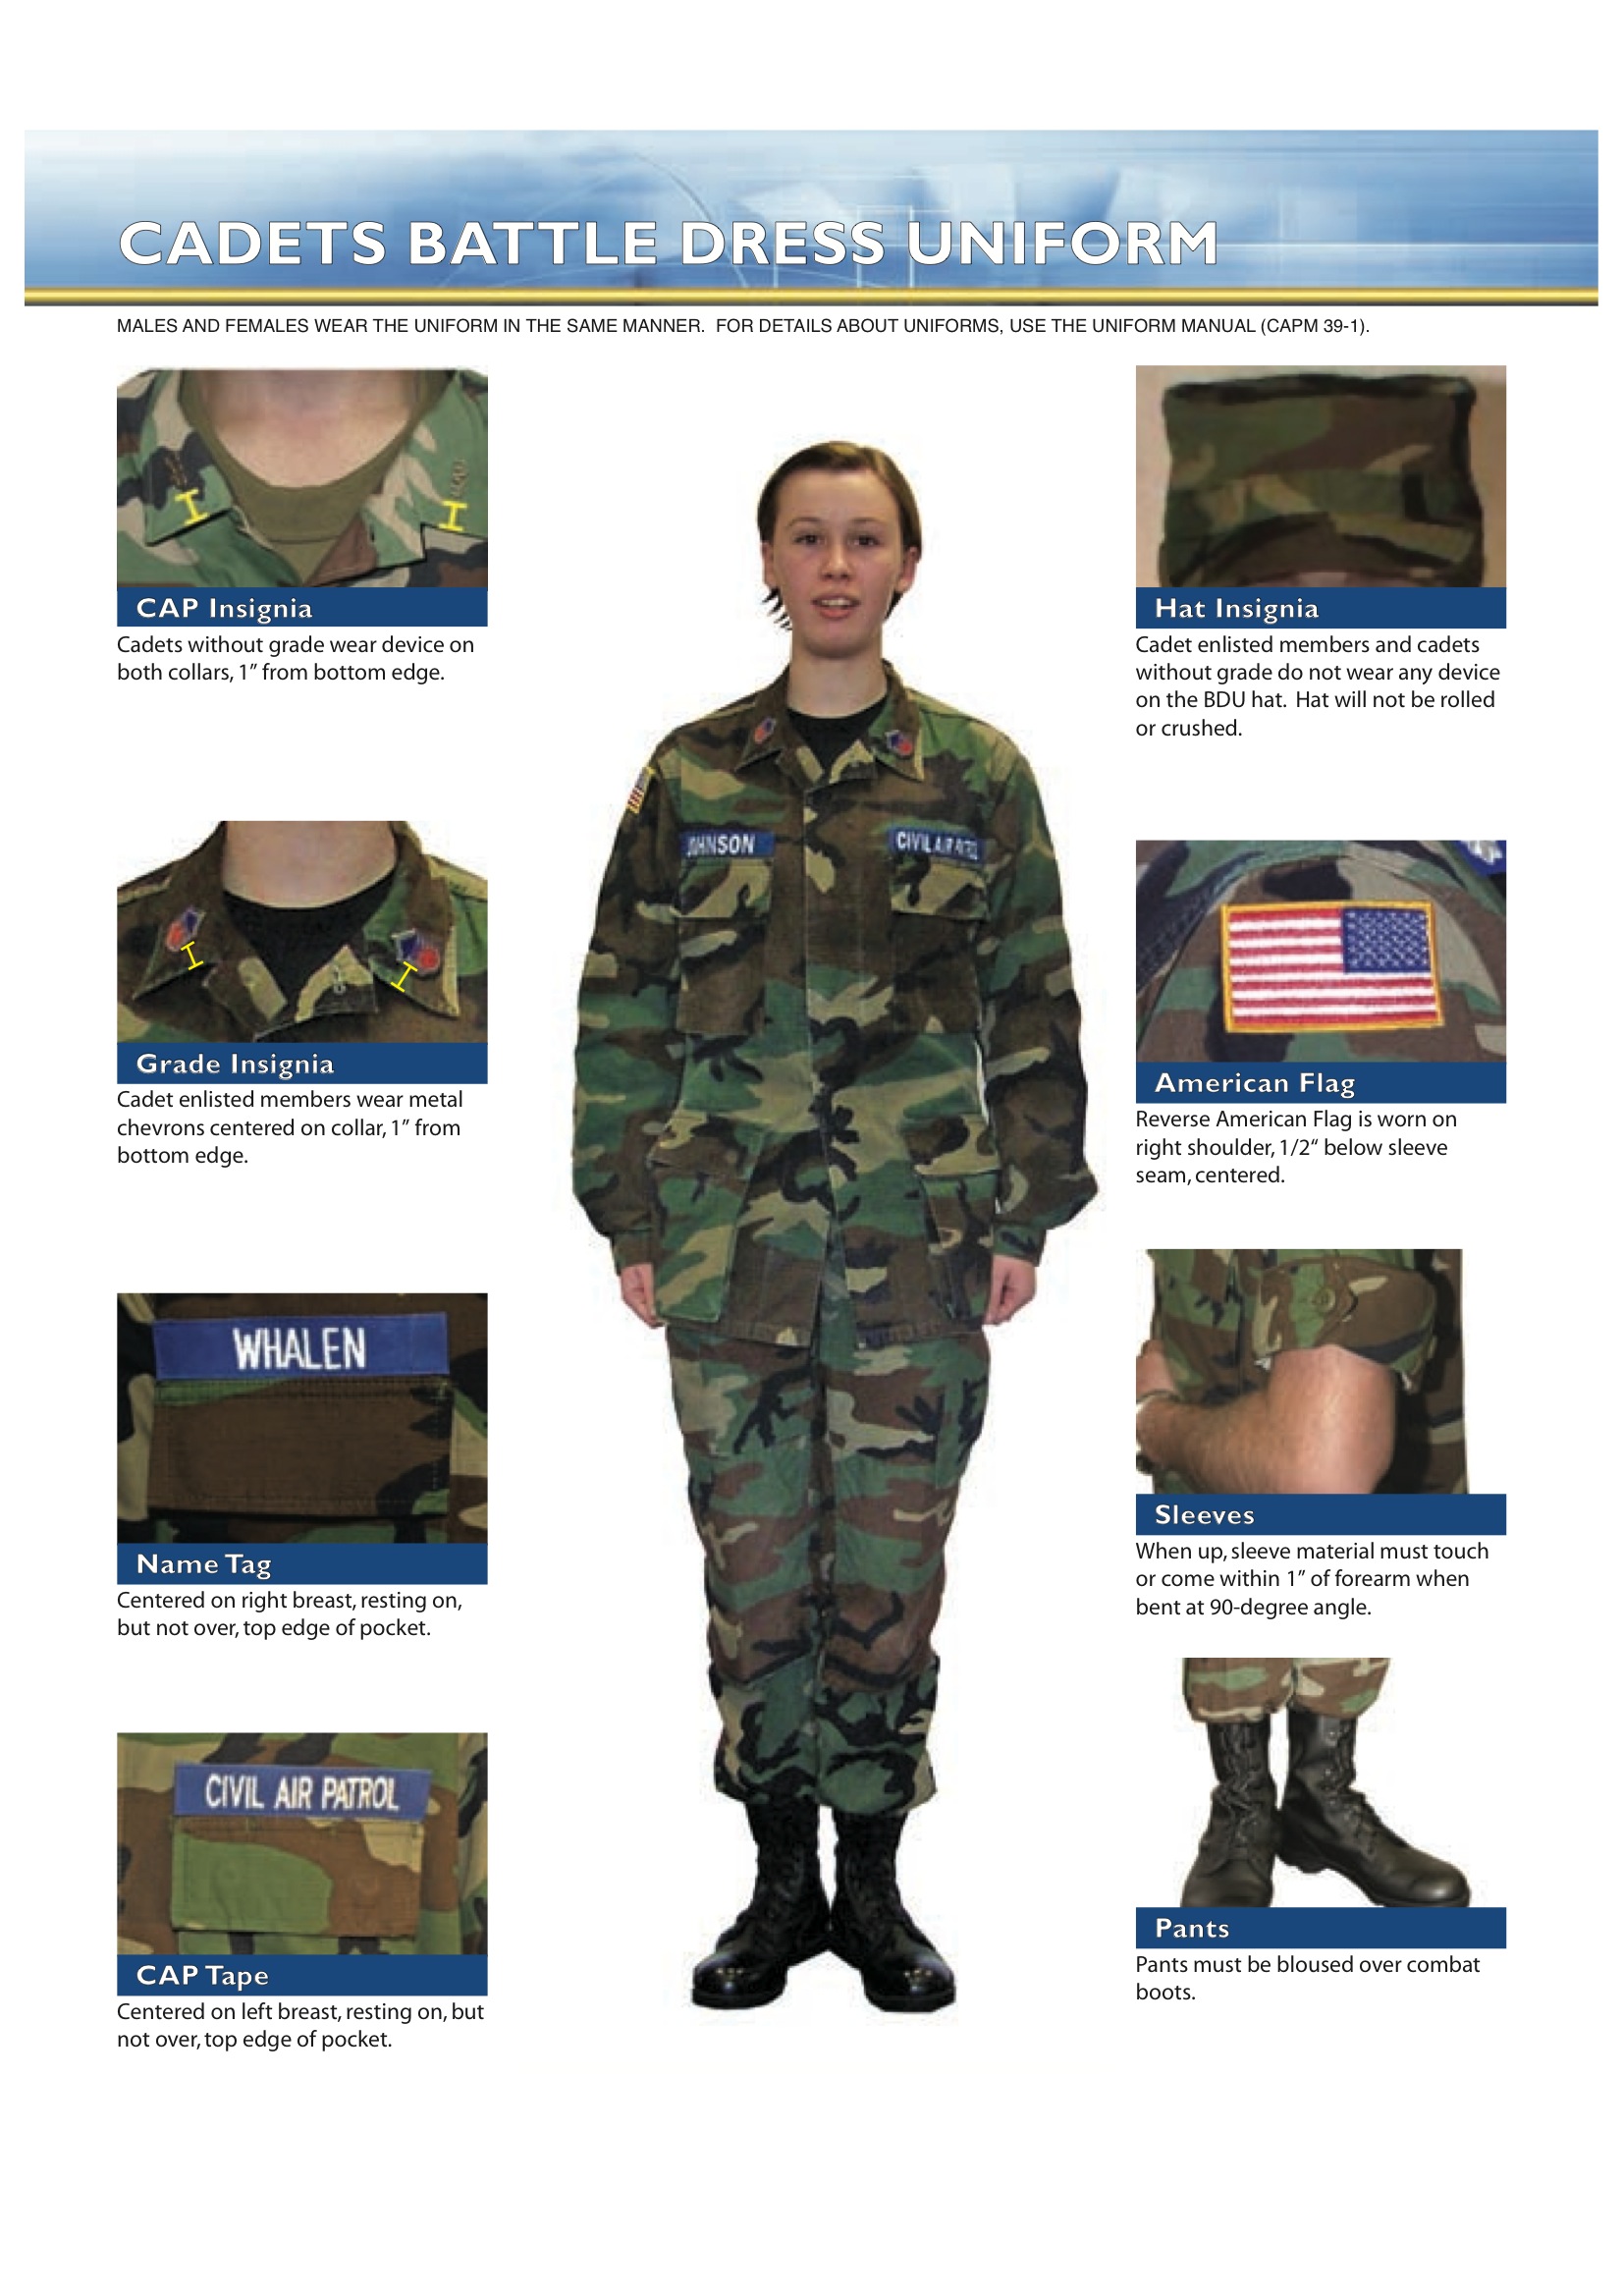 army bdu uniform patch placement